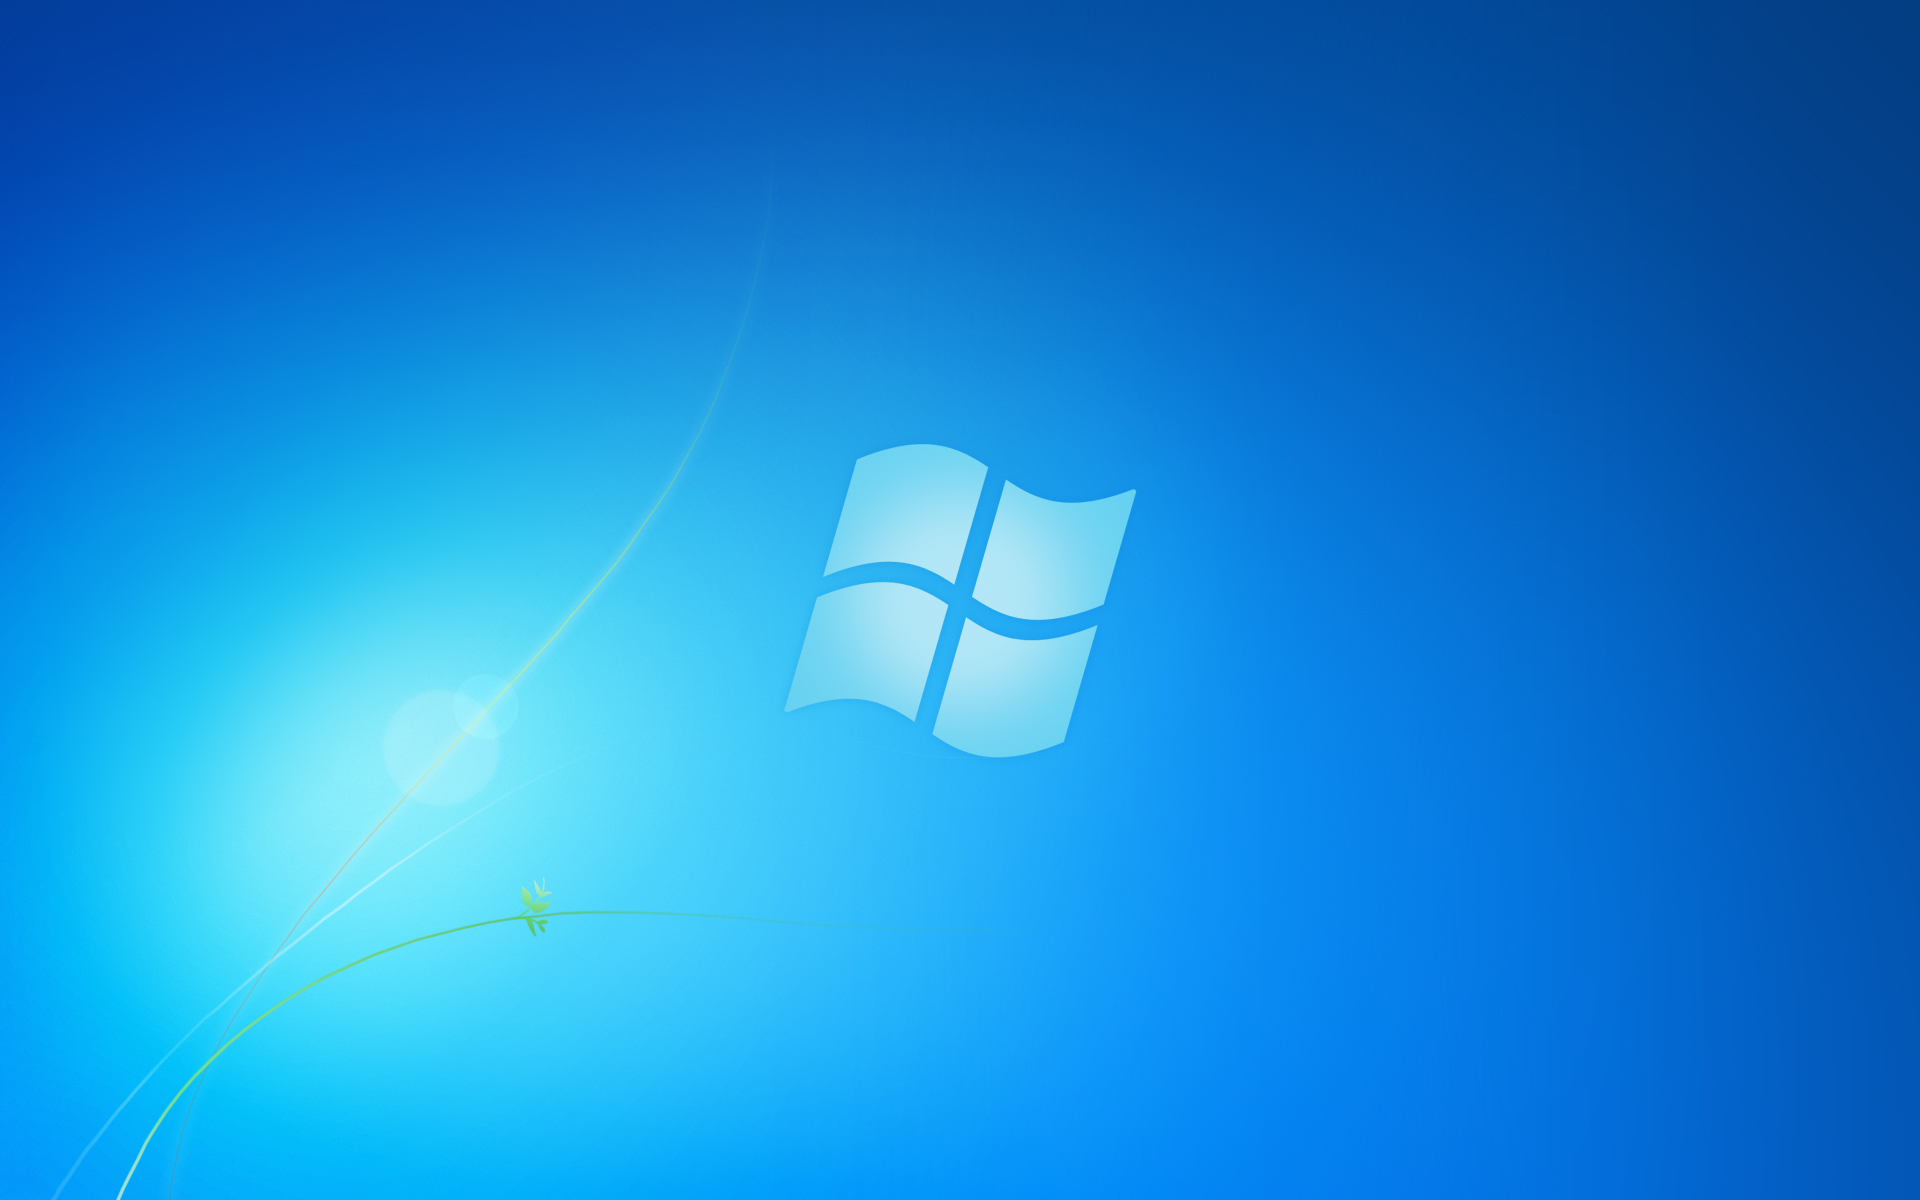 Windows 7 Starter Wallpaper Changer: Bạn muốn tạo một dấu ấn khác biệt cho chiếc máy tính của mình? Hãy cài đặt Windows 7 Starter Wallpaper Changer để thay đổi hình nền của máy tính của bạn một cách dễ dàng và nhanh chóng. Bạn có thể chọn từ bộ sưu tập các hình ảnh đẹp, tạo ra một không gian làm việc mới mẻ và độc đáo.